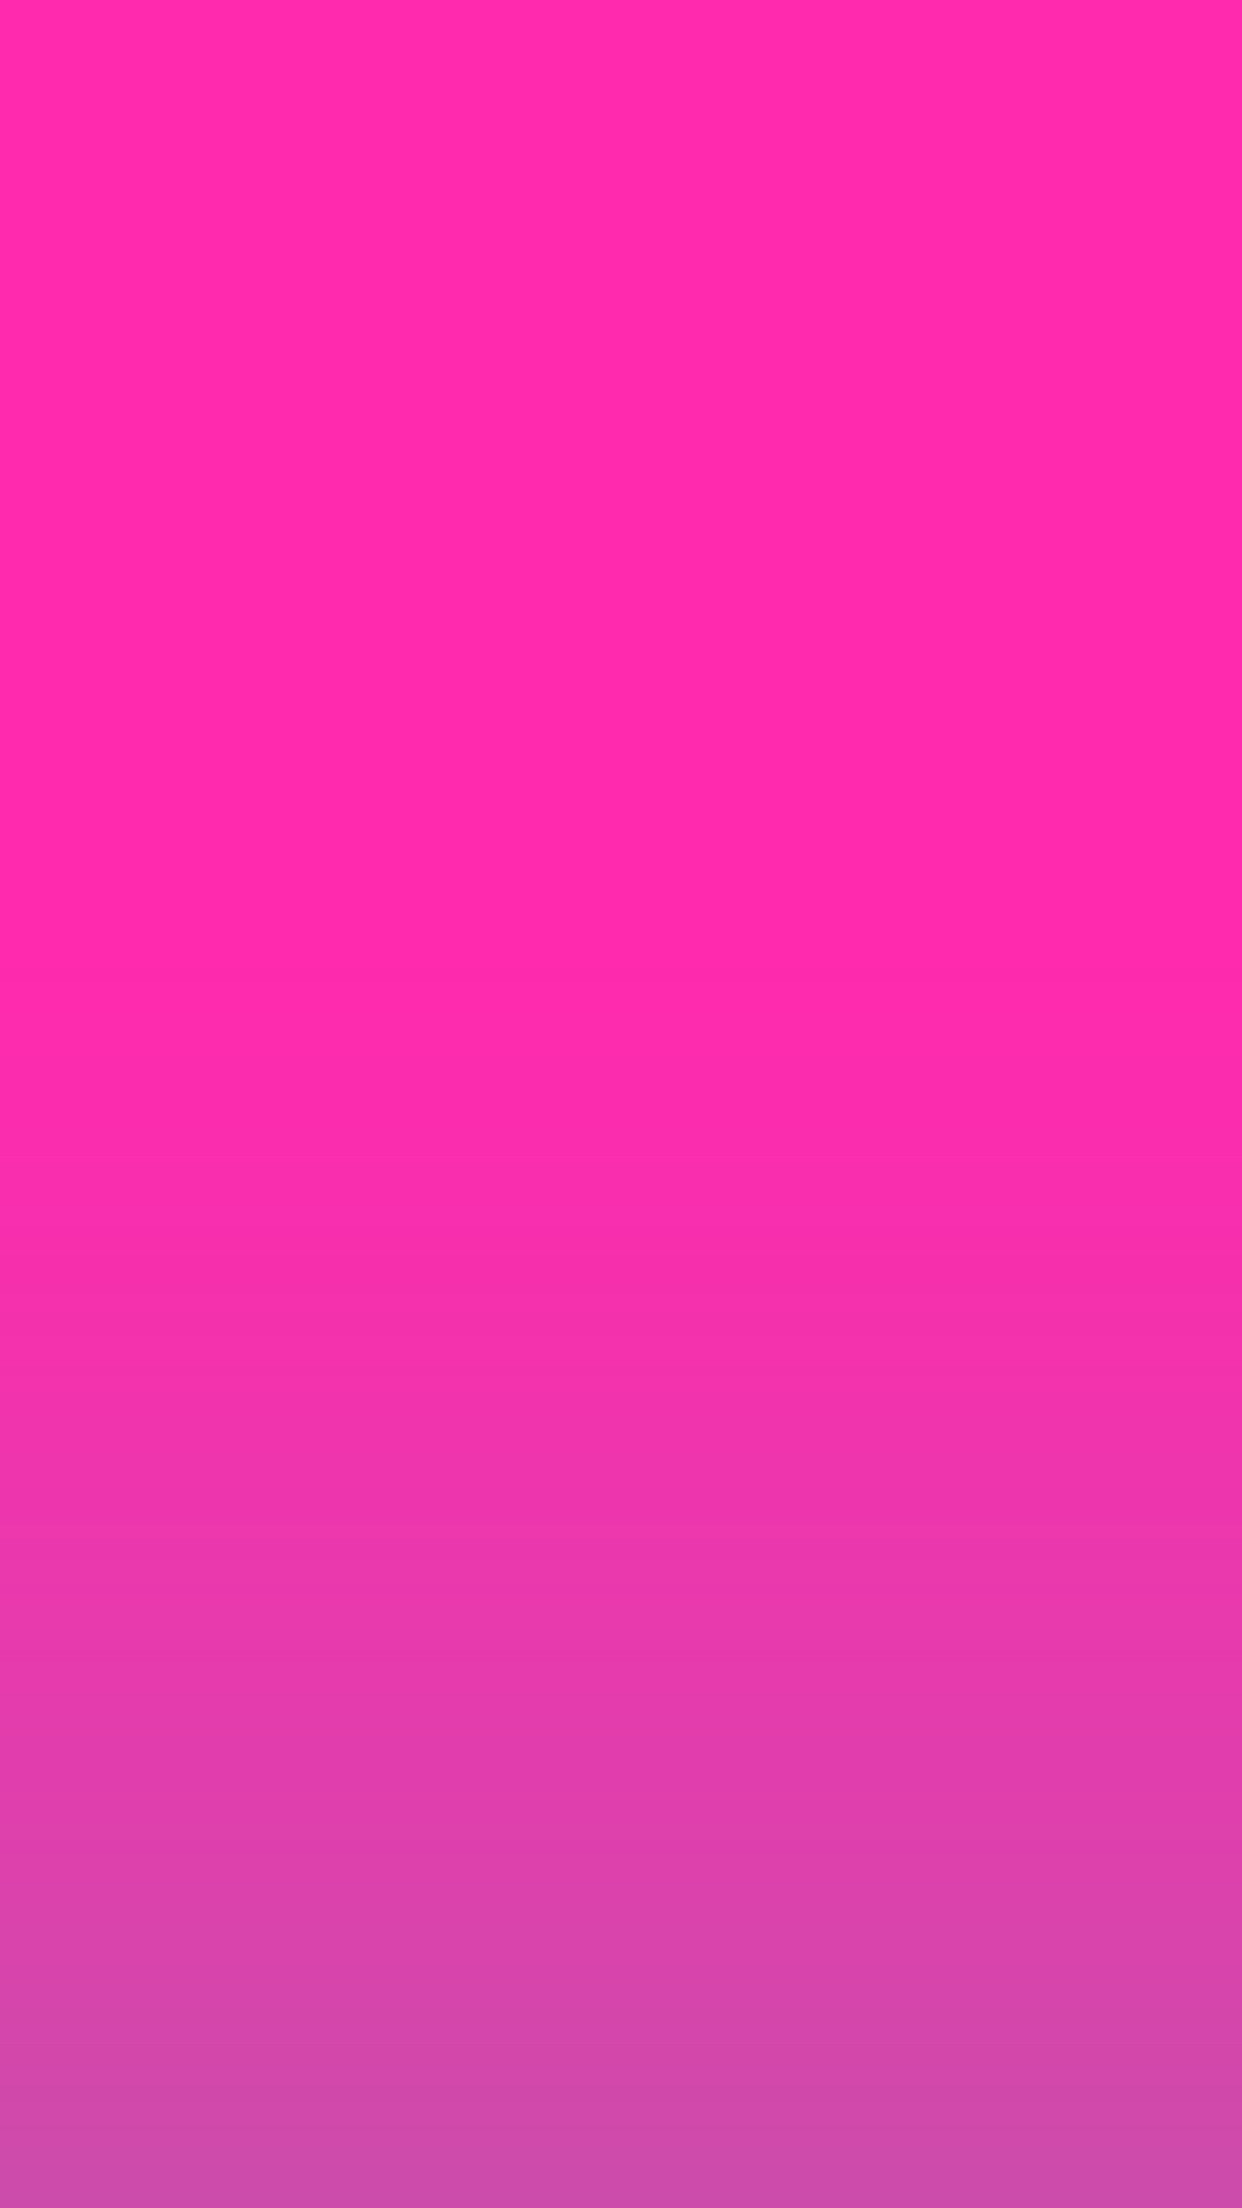 1242x2208 Pink, purple, gradient, ombre, wallpaper, iPhone